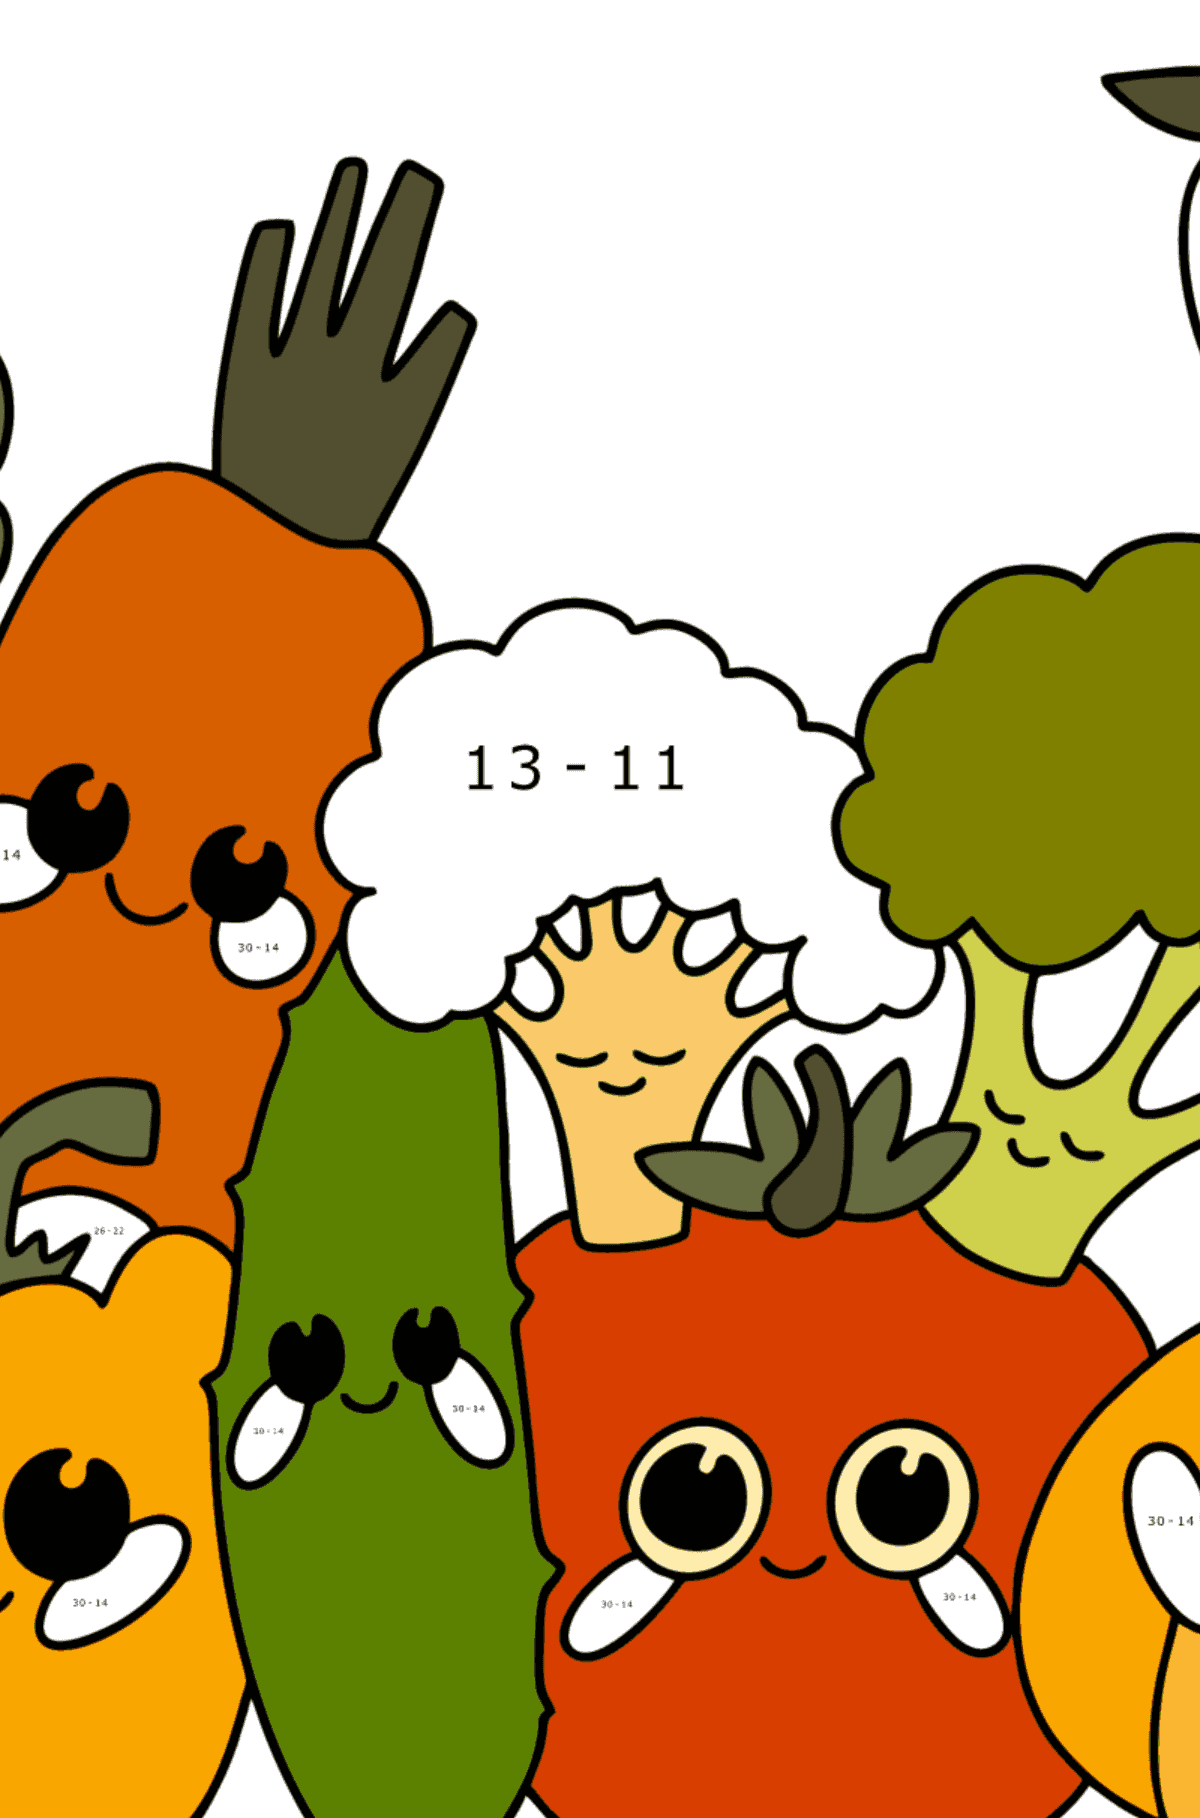 Cartoon-Gemüse ausmalbild - Mathe Ausmalbilder - Subtraktion für Kinder